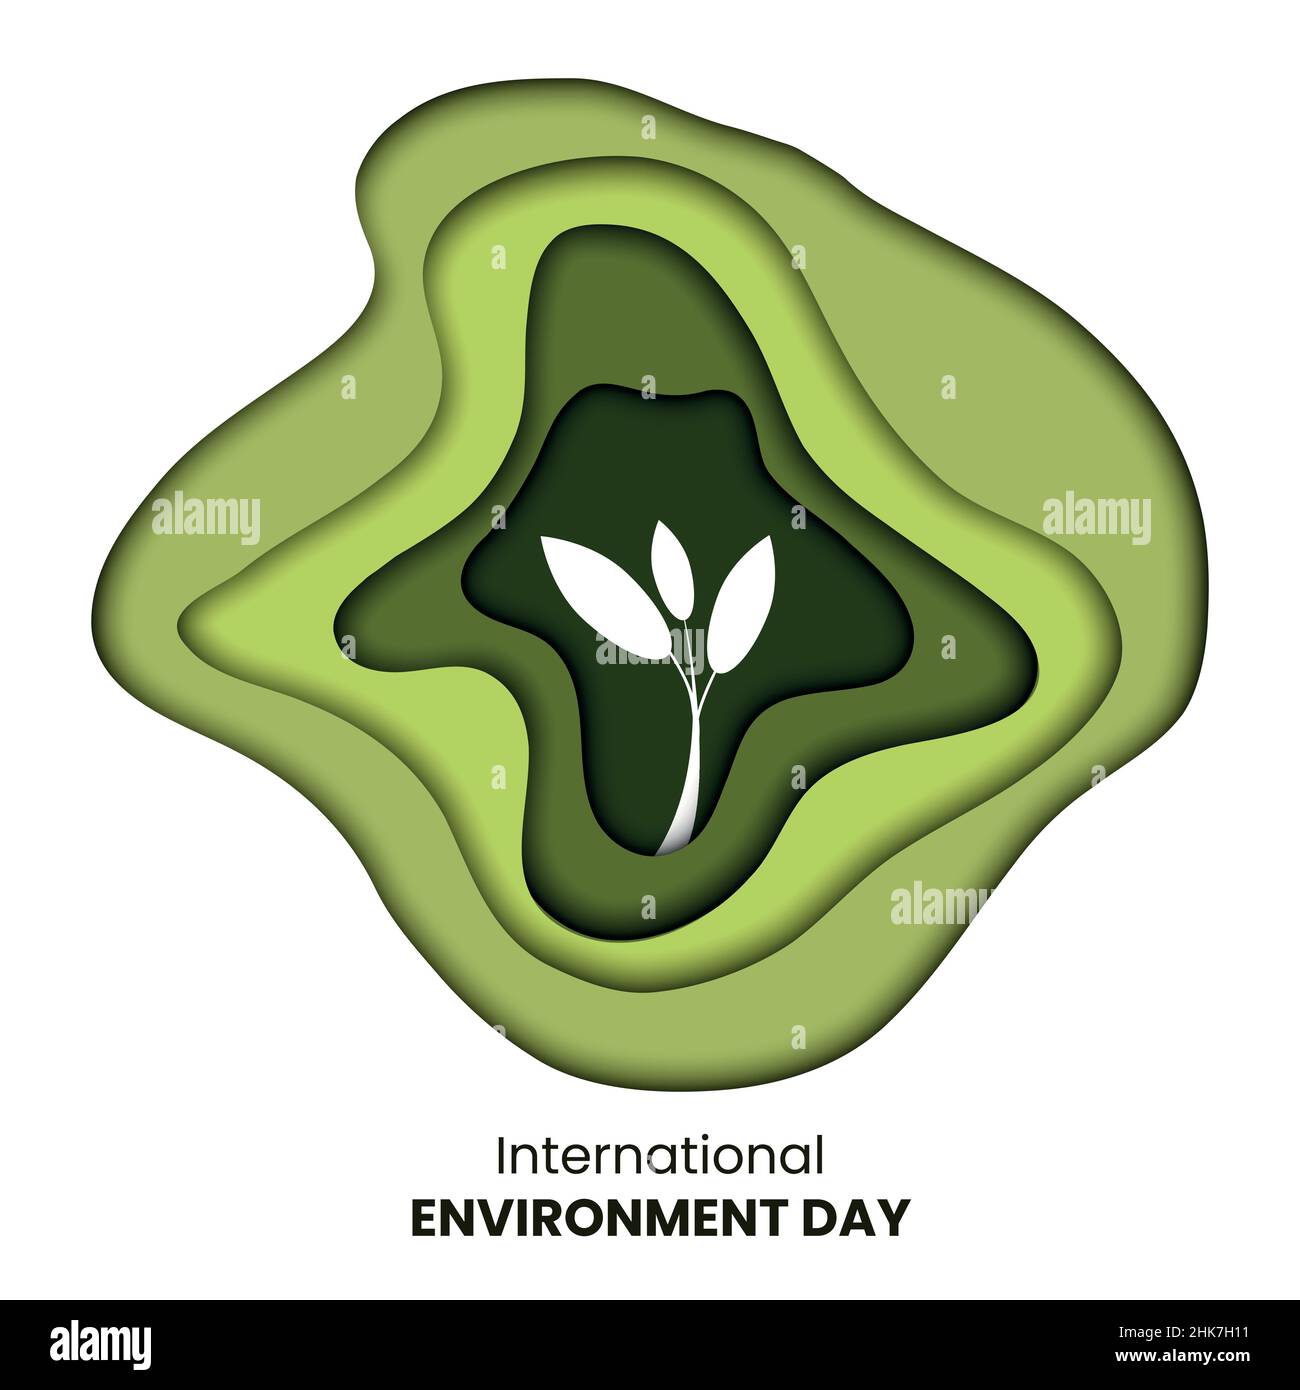 Dessin d'une branche représentant la journée internationale de l'environnement.Motif en papier coupé ou sculpté dans des tons verts Illustration de Vecteur